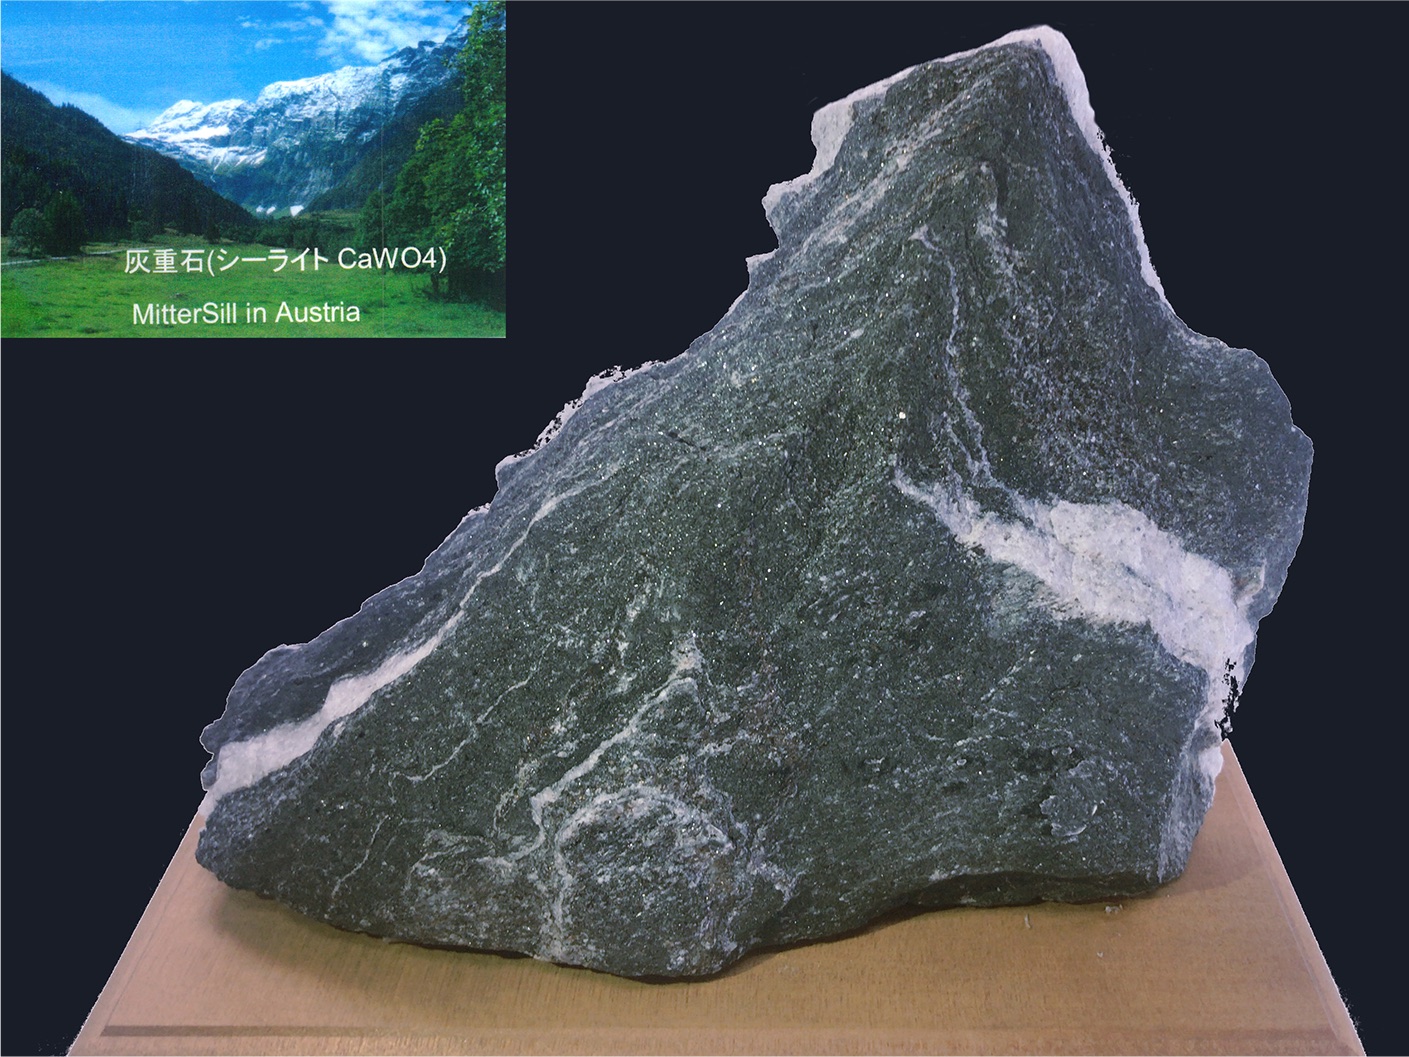 Minerals containing tungsten